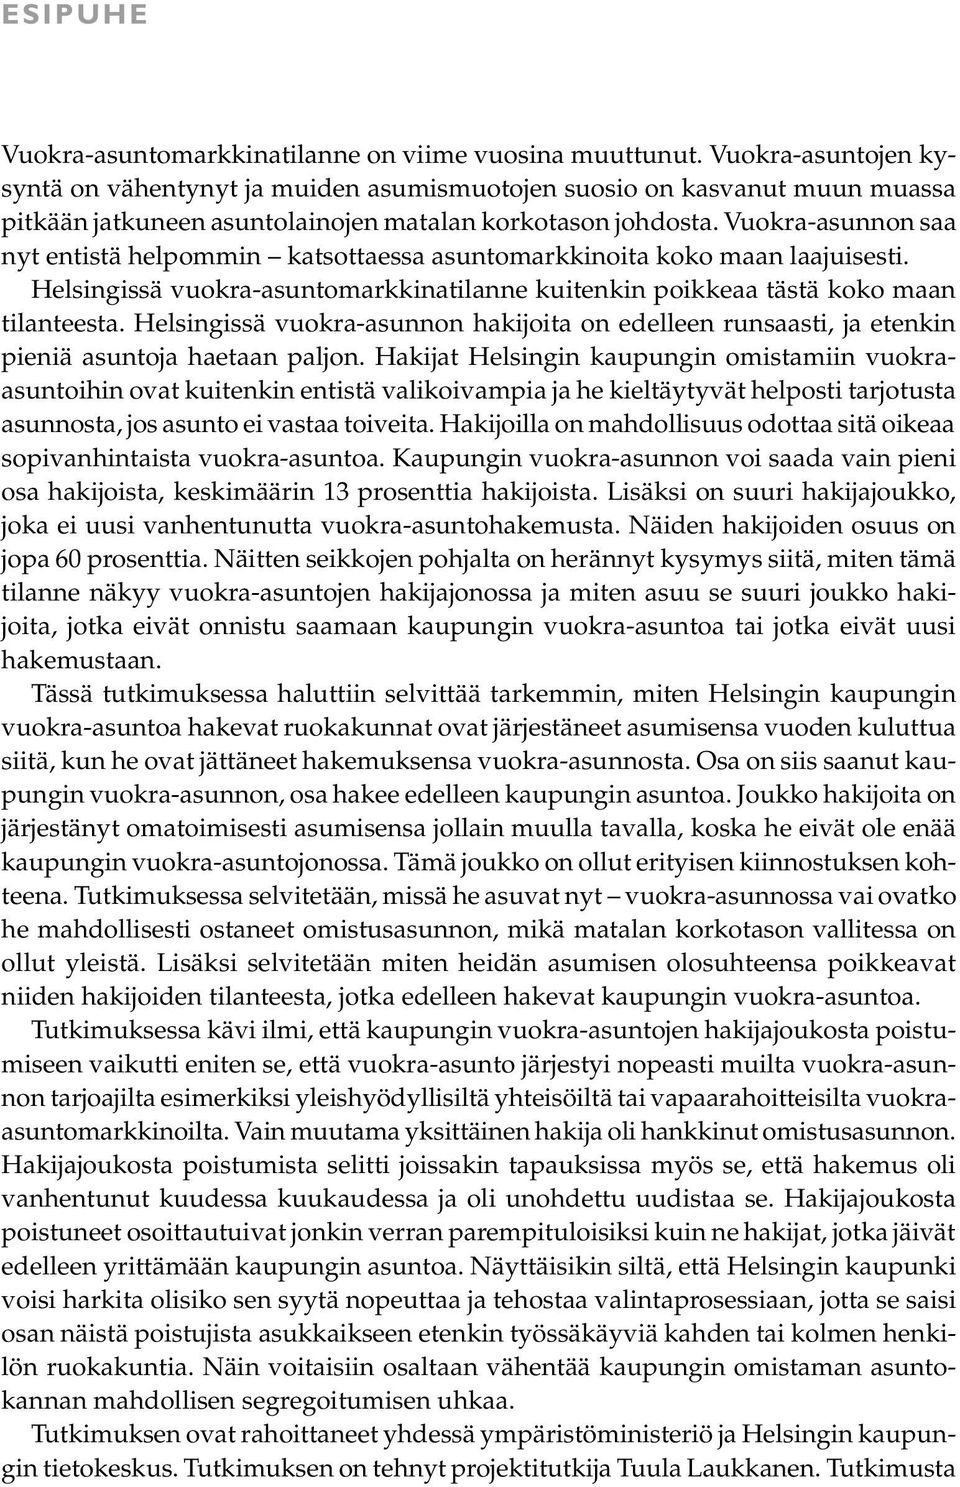 Vuokra-asunnon saa nyt entistä helpommin katsottaessa asuntomarkkinoita koko maan laajuisesti. Helsingissä vuokra-asuntomarkkinatilanne kuitenkin poikkeaa tästä koko maan tilanteesta.